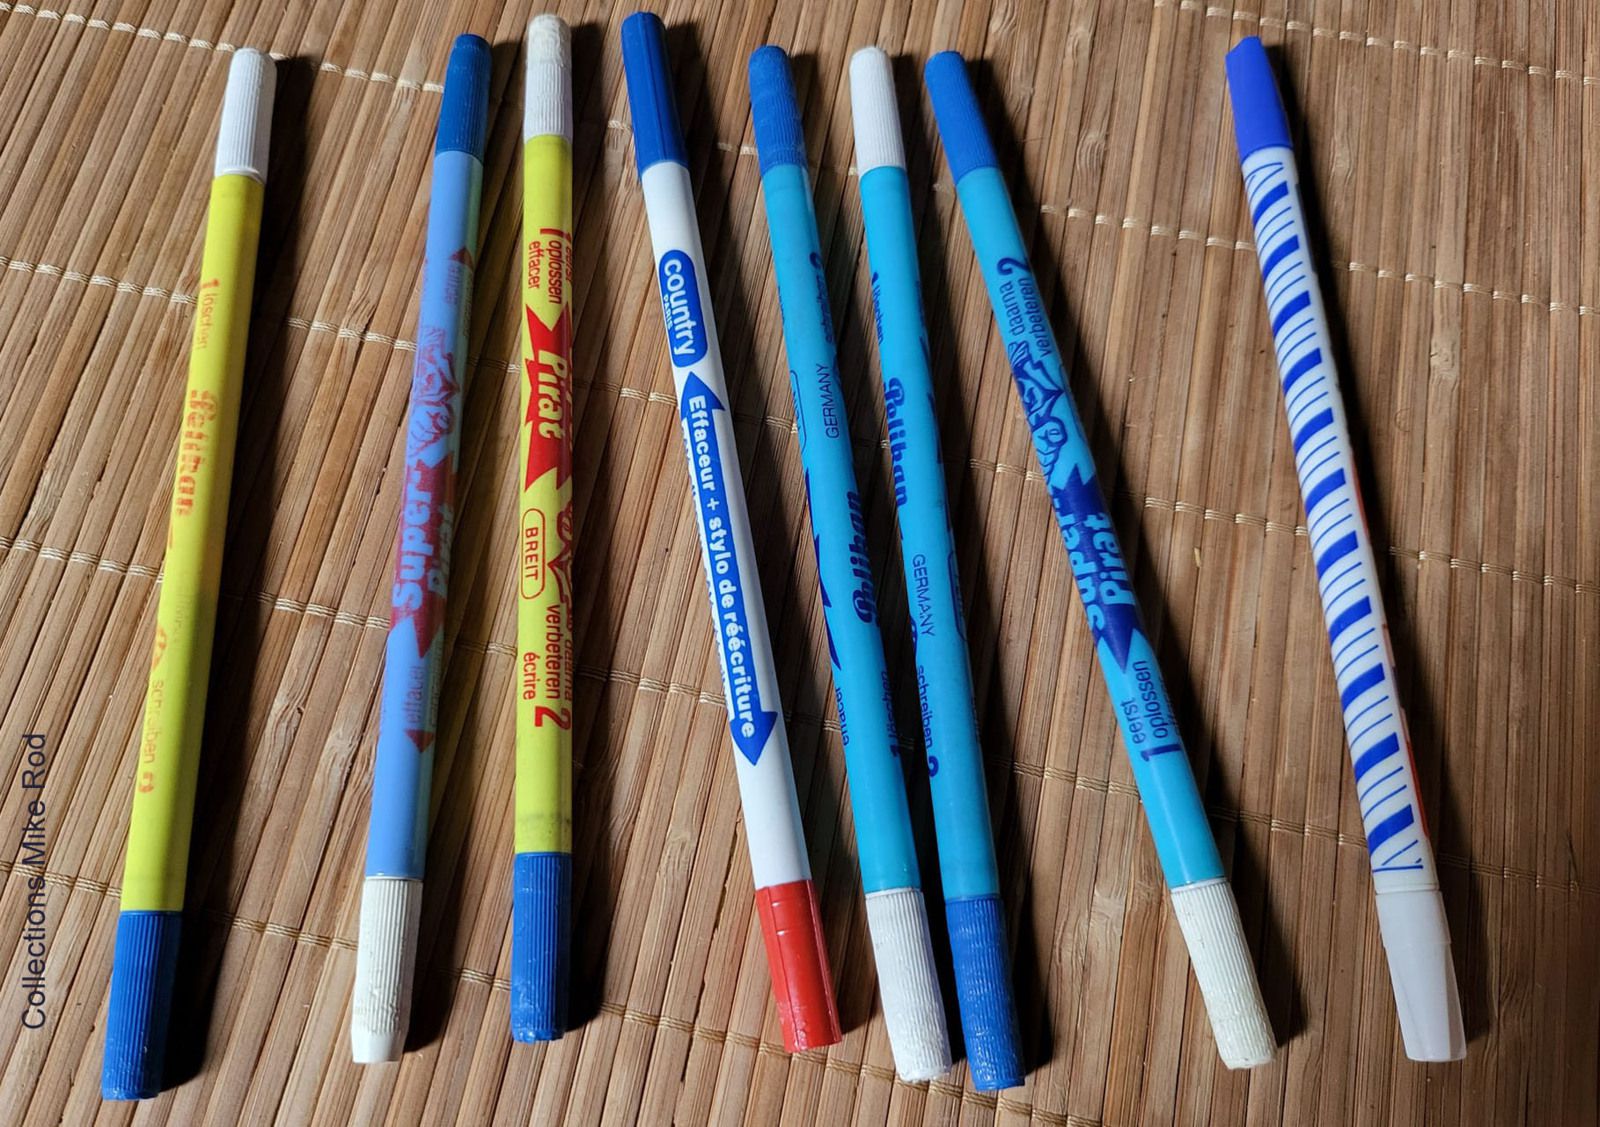 Crayon pousse mine - Ecole des années 80 - Génération Souvenirs